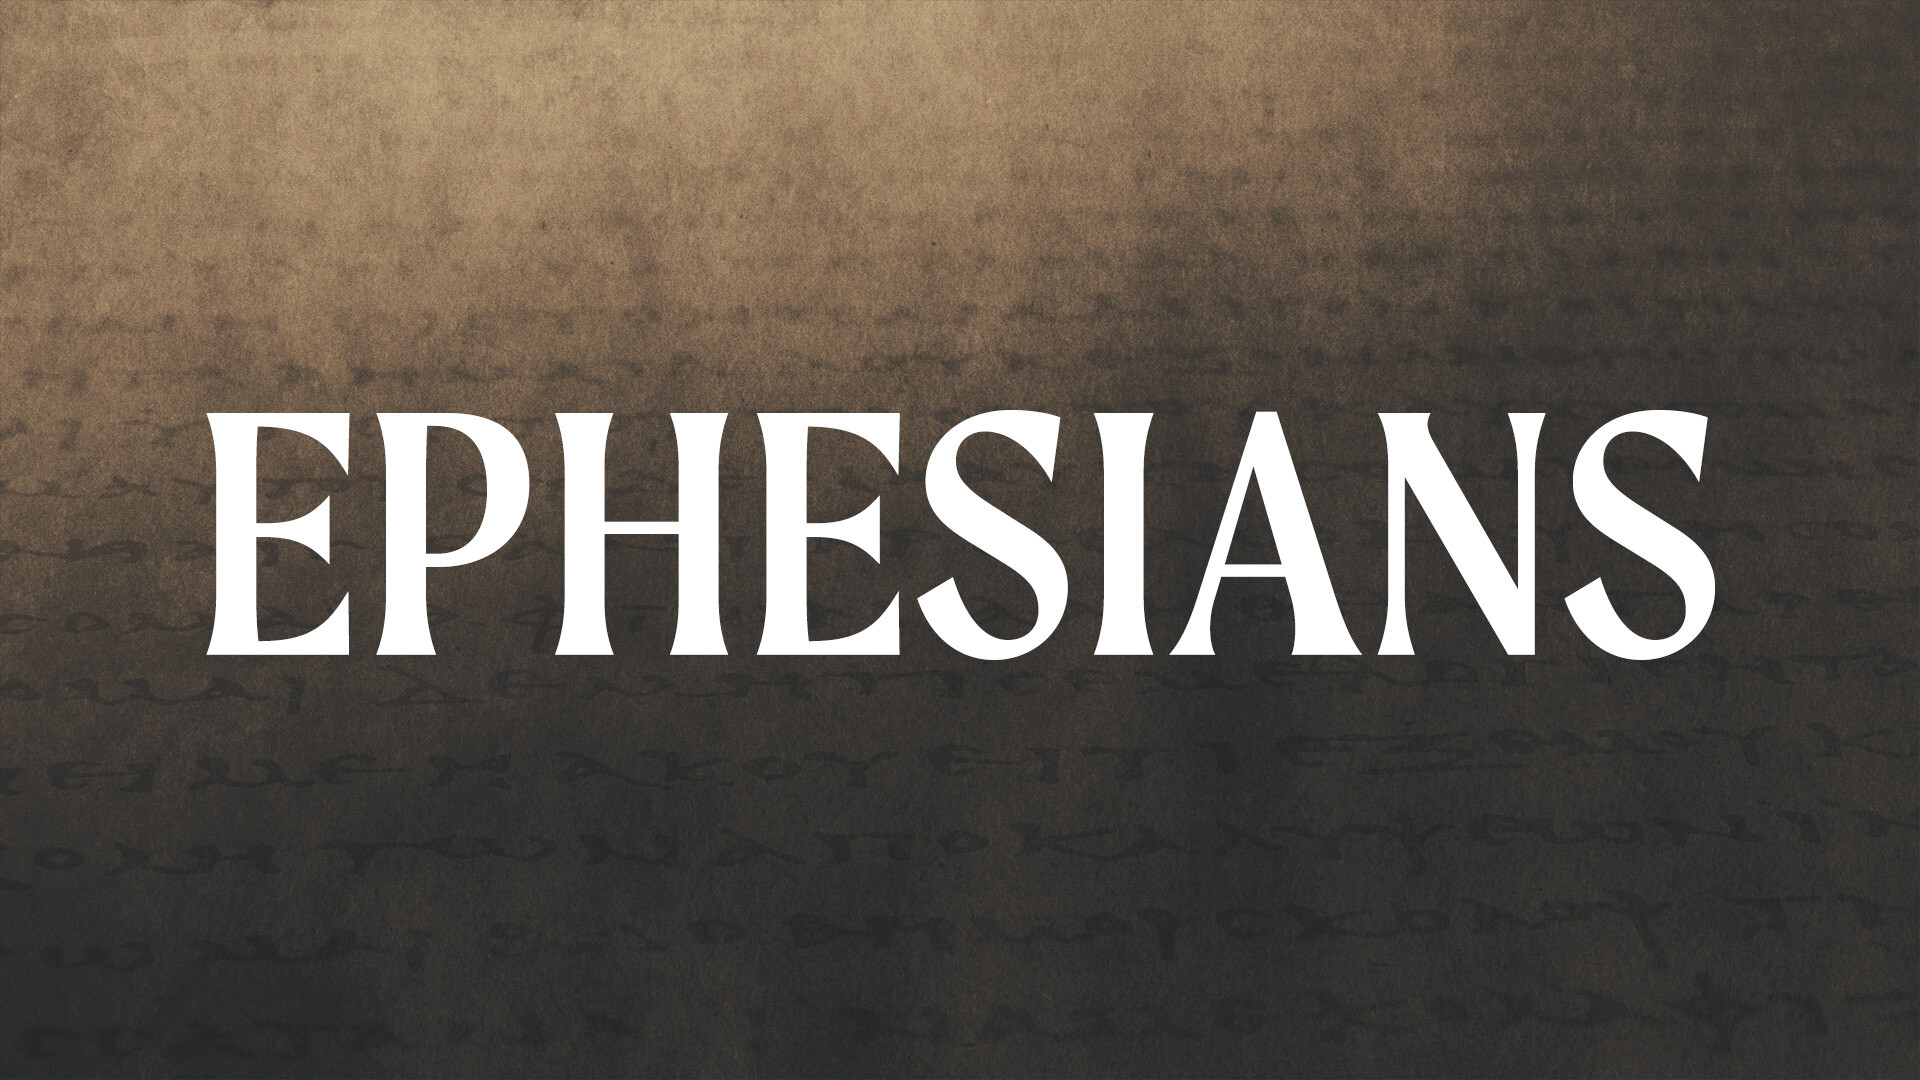 Ephesians Overview